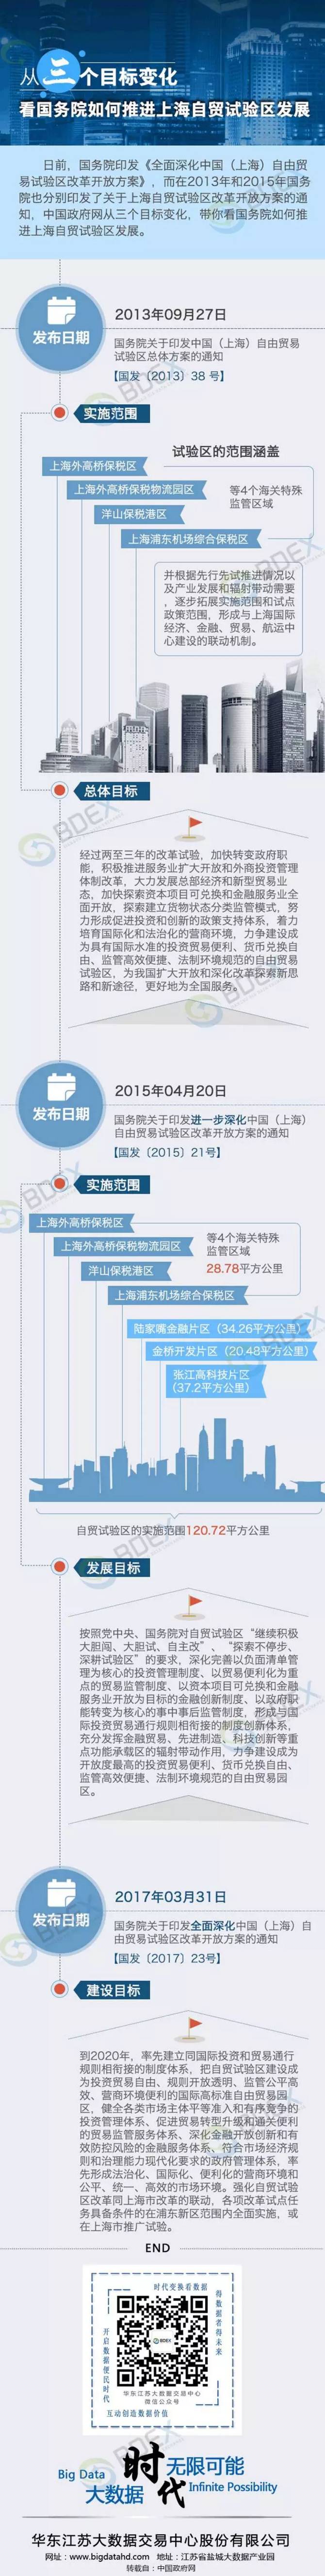 推进上海自贸试验区建设的三个维度.png